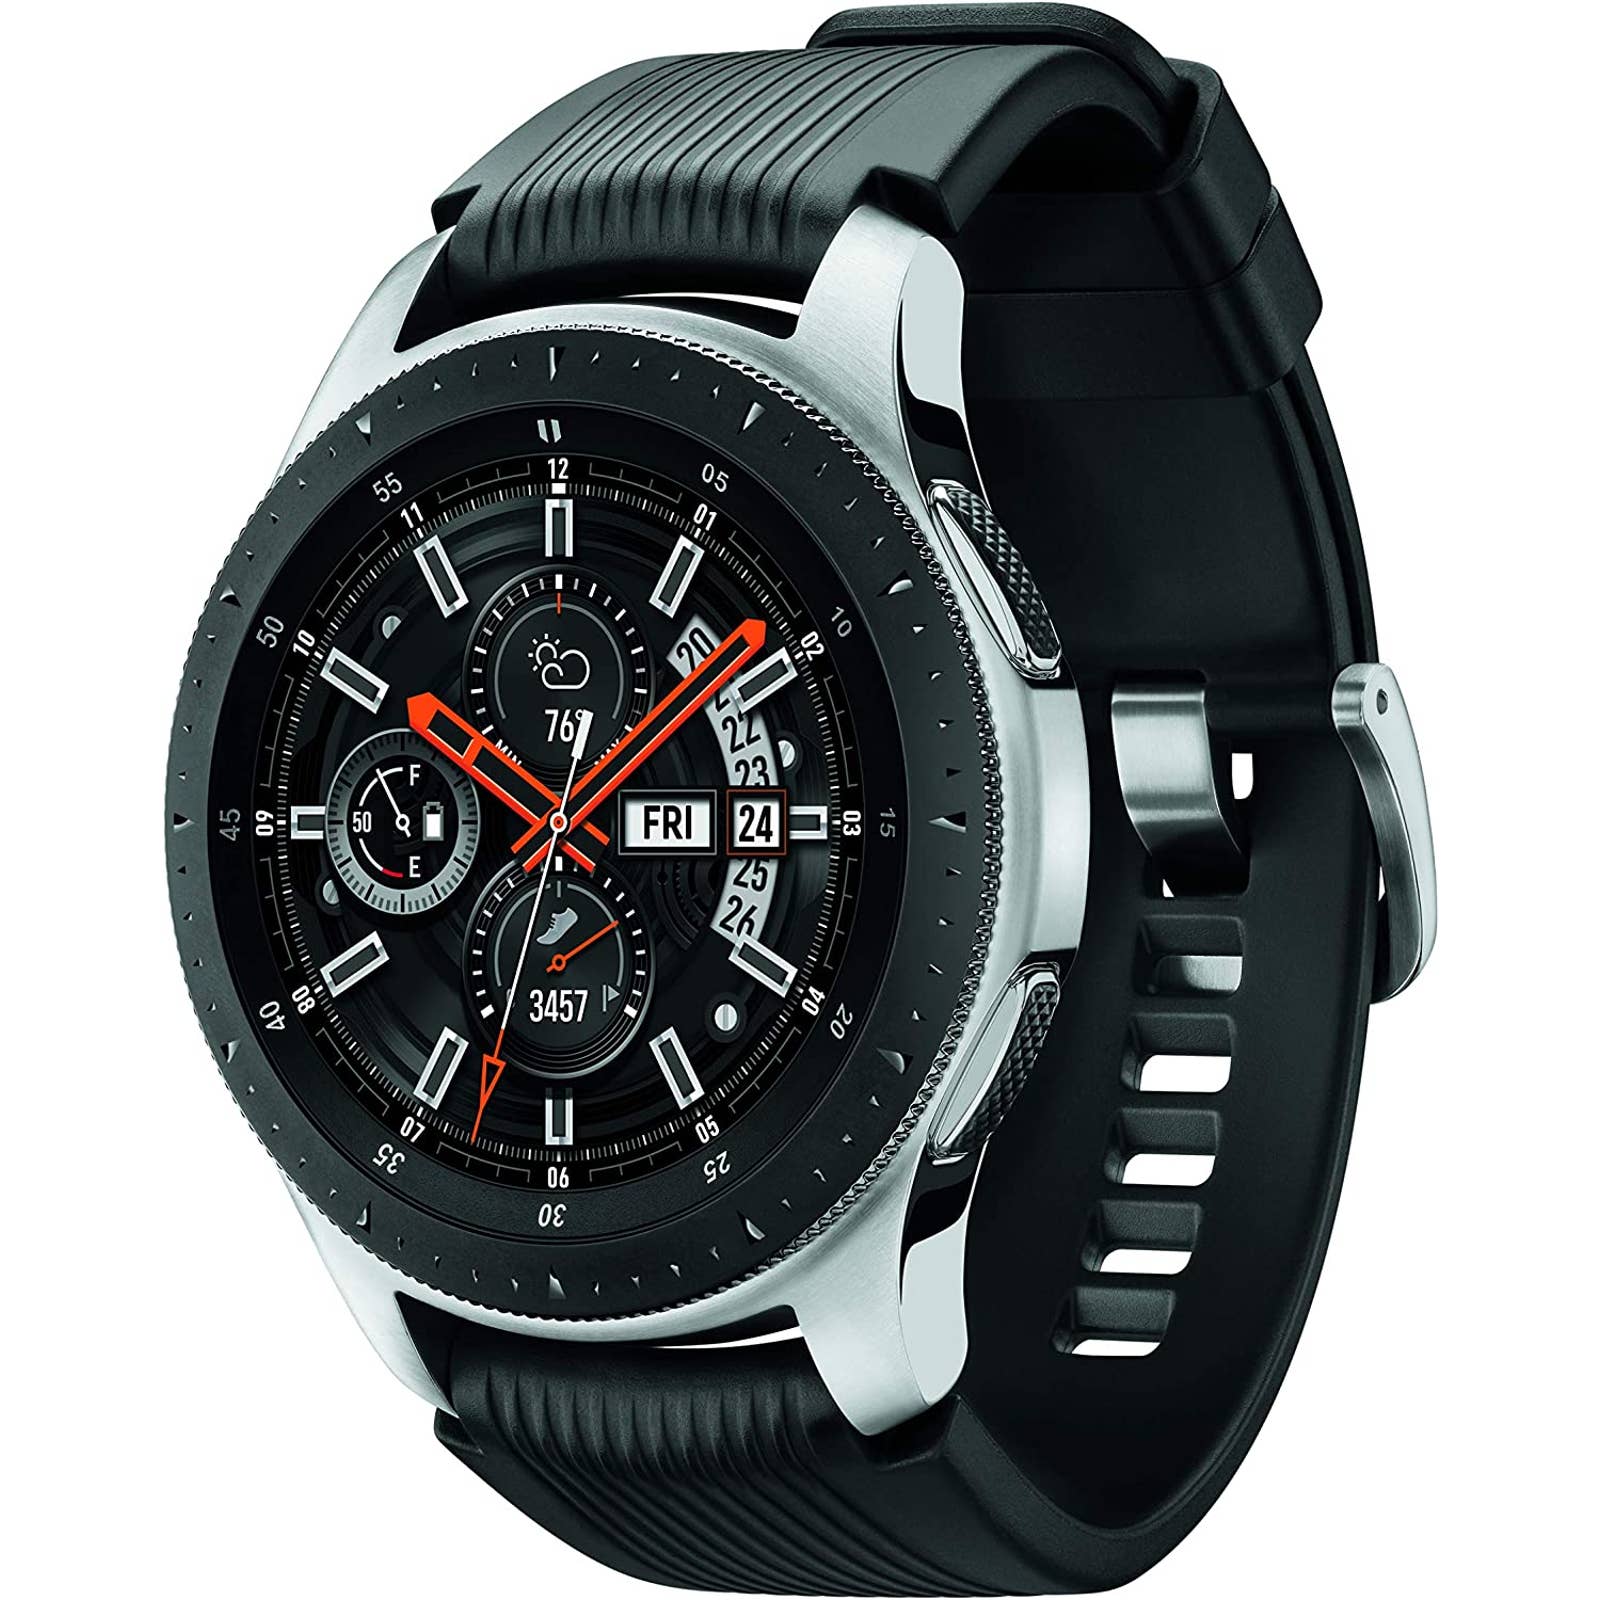 Samsung - SMR800NZSAXAR Galaxy Watch Smartwatch 46mm Stainless Steel - Silver